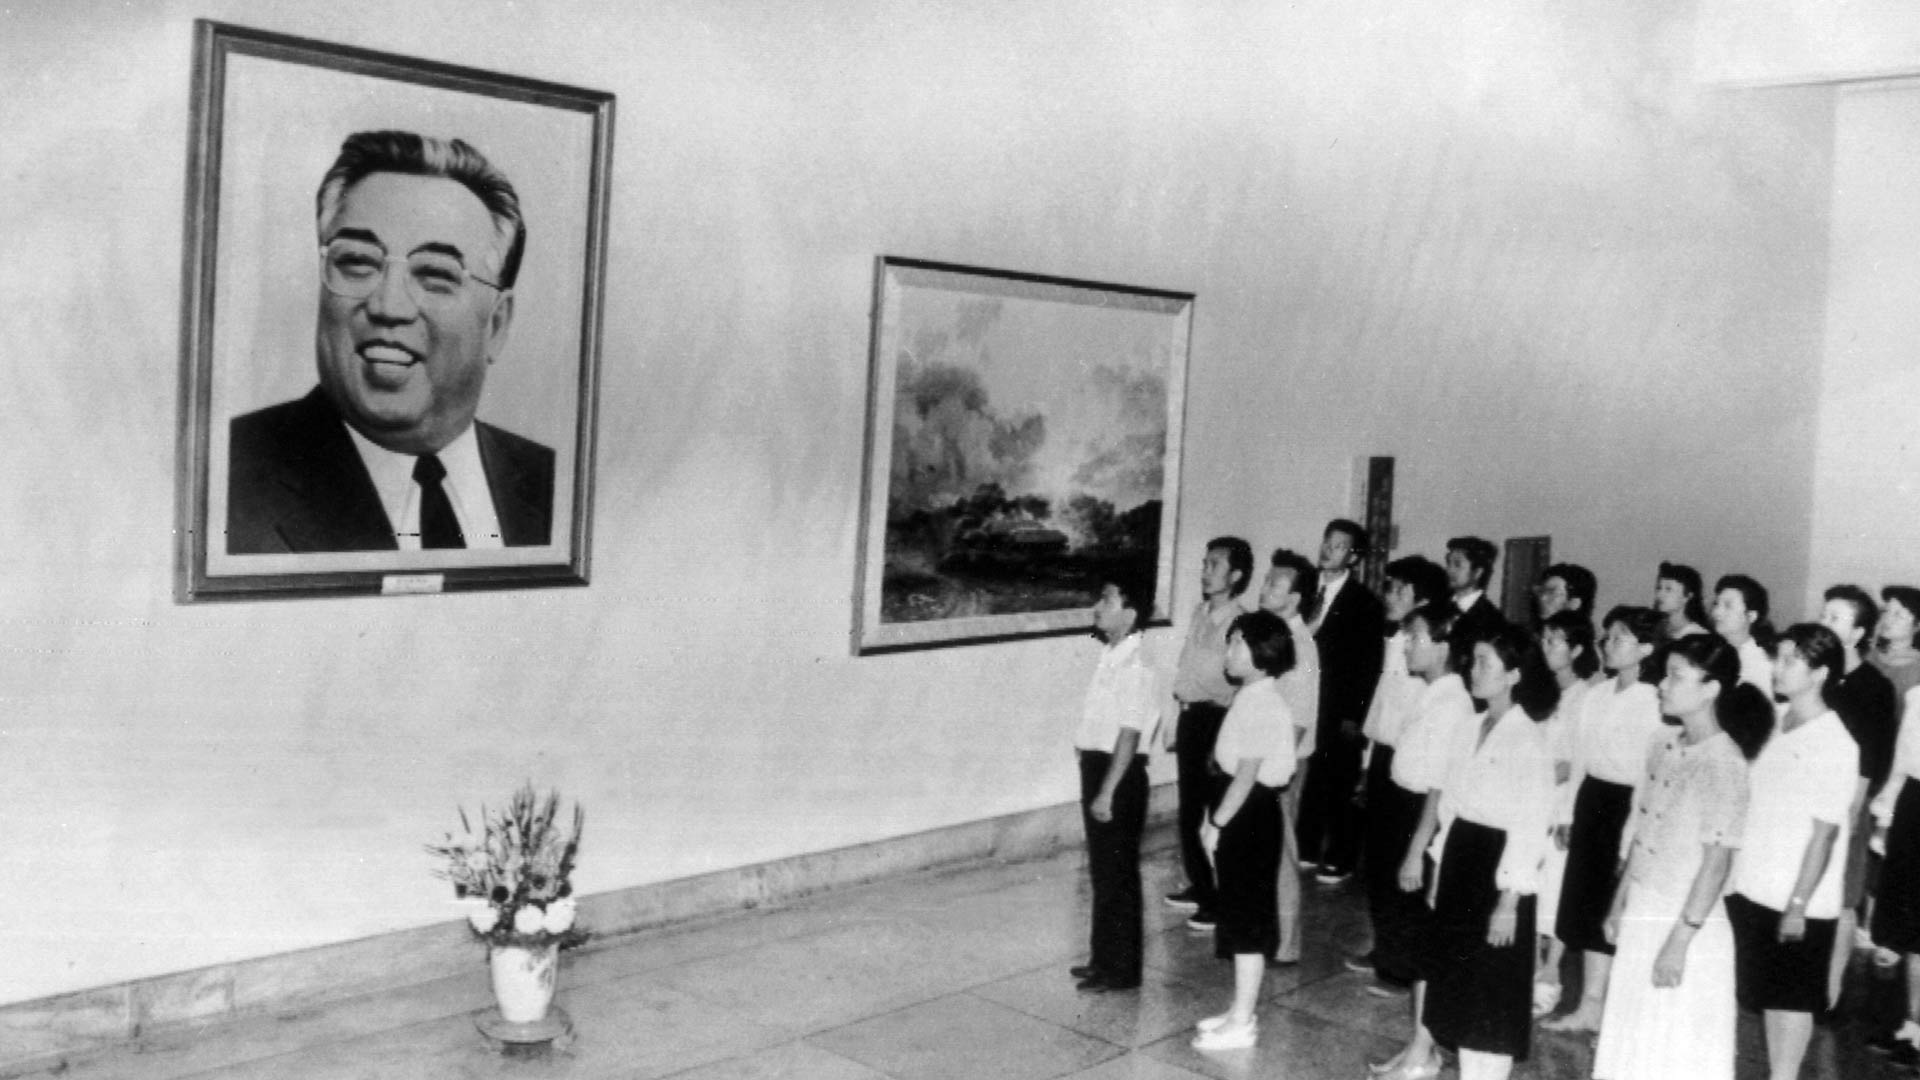 Ensimmäisenä vuorossa on sissitaistelijana varttunut Kim II-sung, joka onnistui luomaan Pohjois-Koreasta maailman kontrolloiduimman valtion.